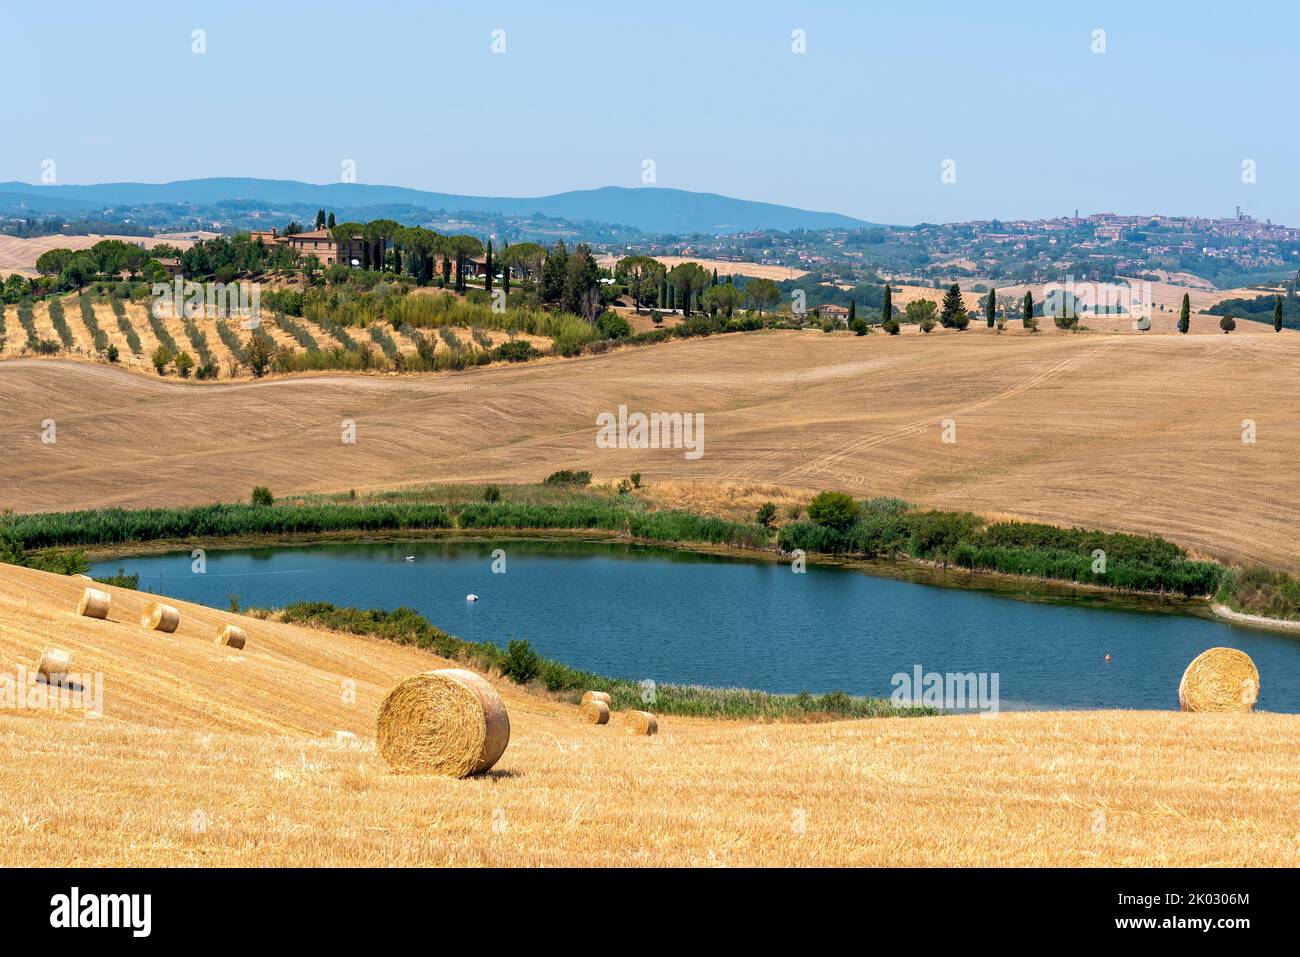 Geerntete Getreidefelder, Teich, Anwesen mit Zypressen, am Horizont die Stadt Siena, Toskana, Italien Stockfoto